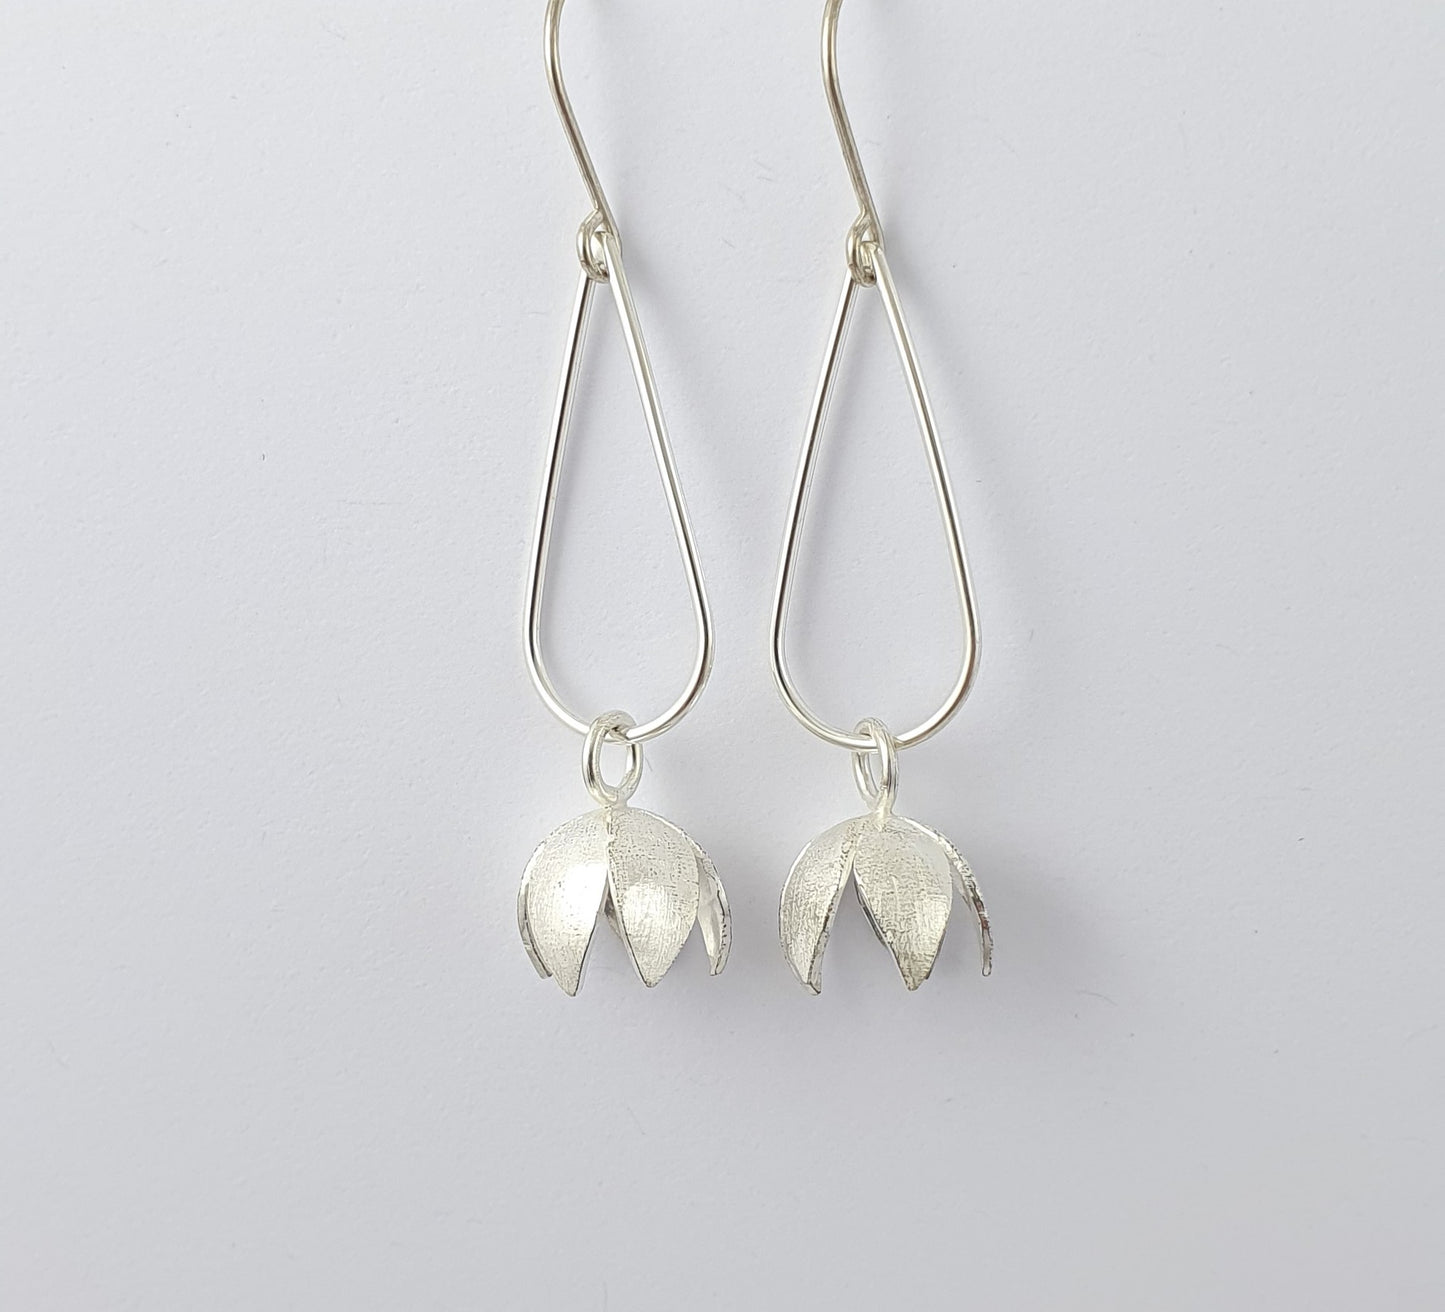 Blossom Cap Earrings - 5 petals